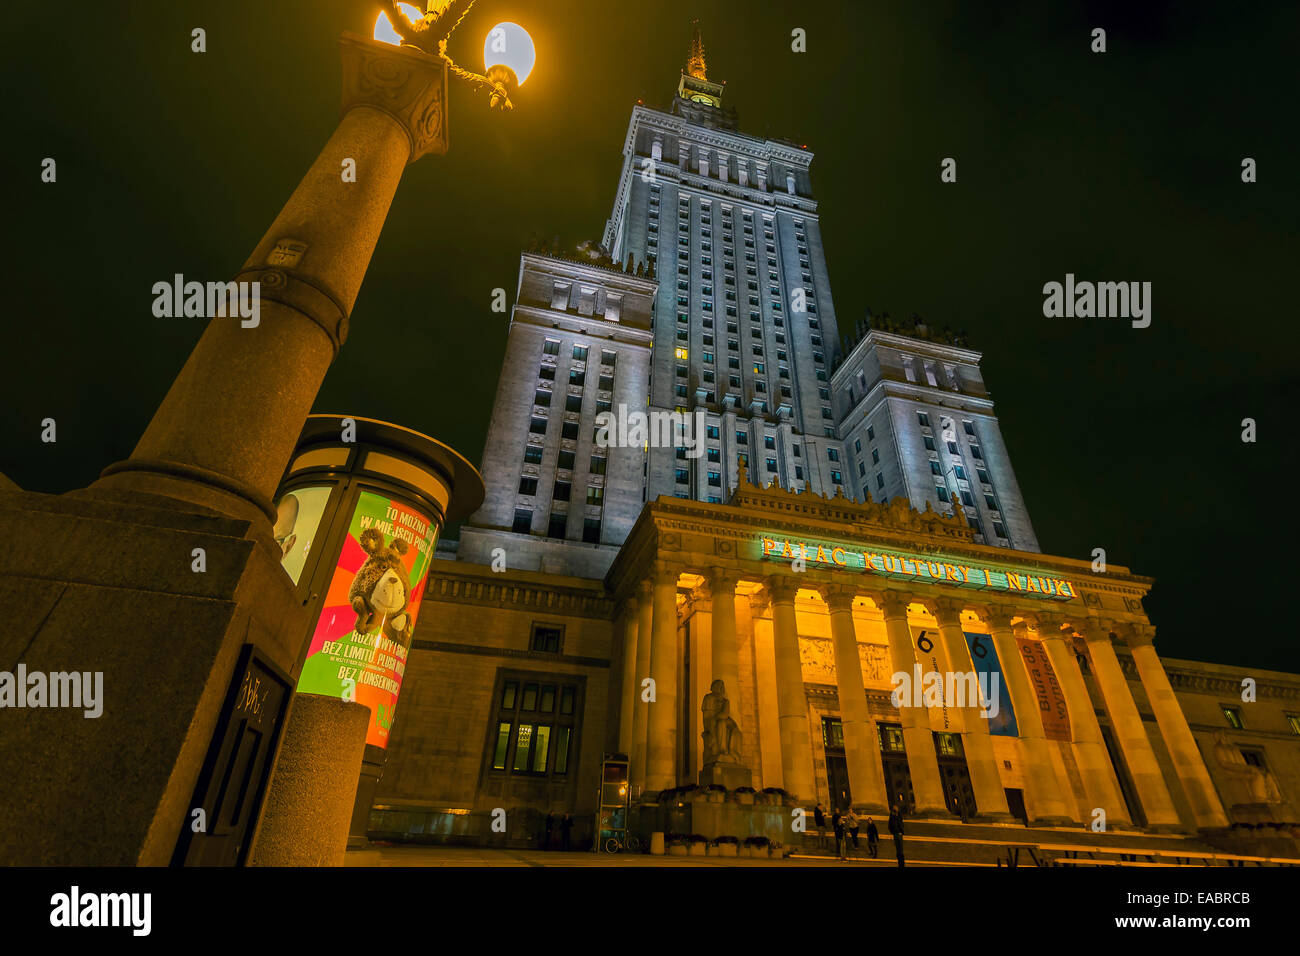 Varsovie, Pologne - 20 octobre 2014 : palais de la culture et de la science à la nuit. Varsovie, Pologne Banque D'Images